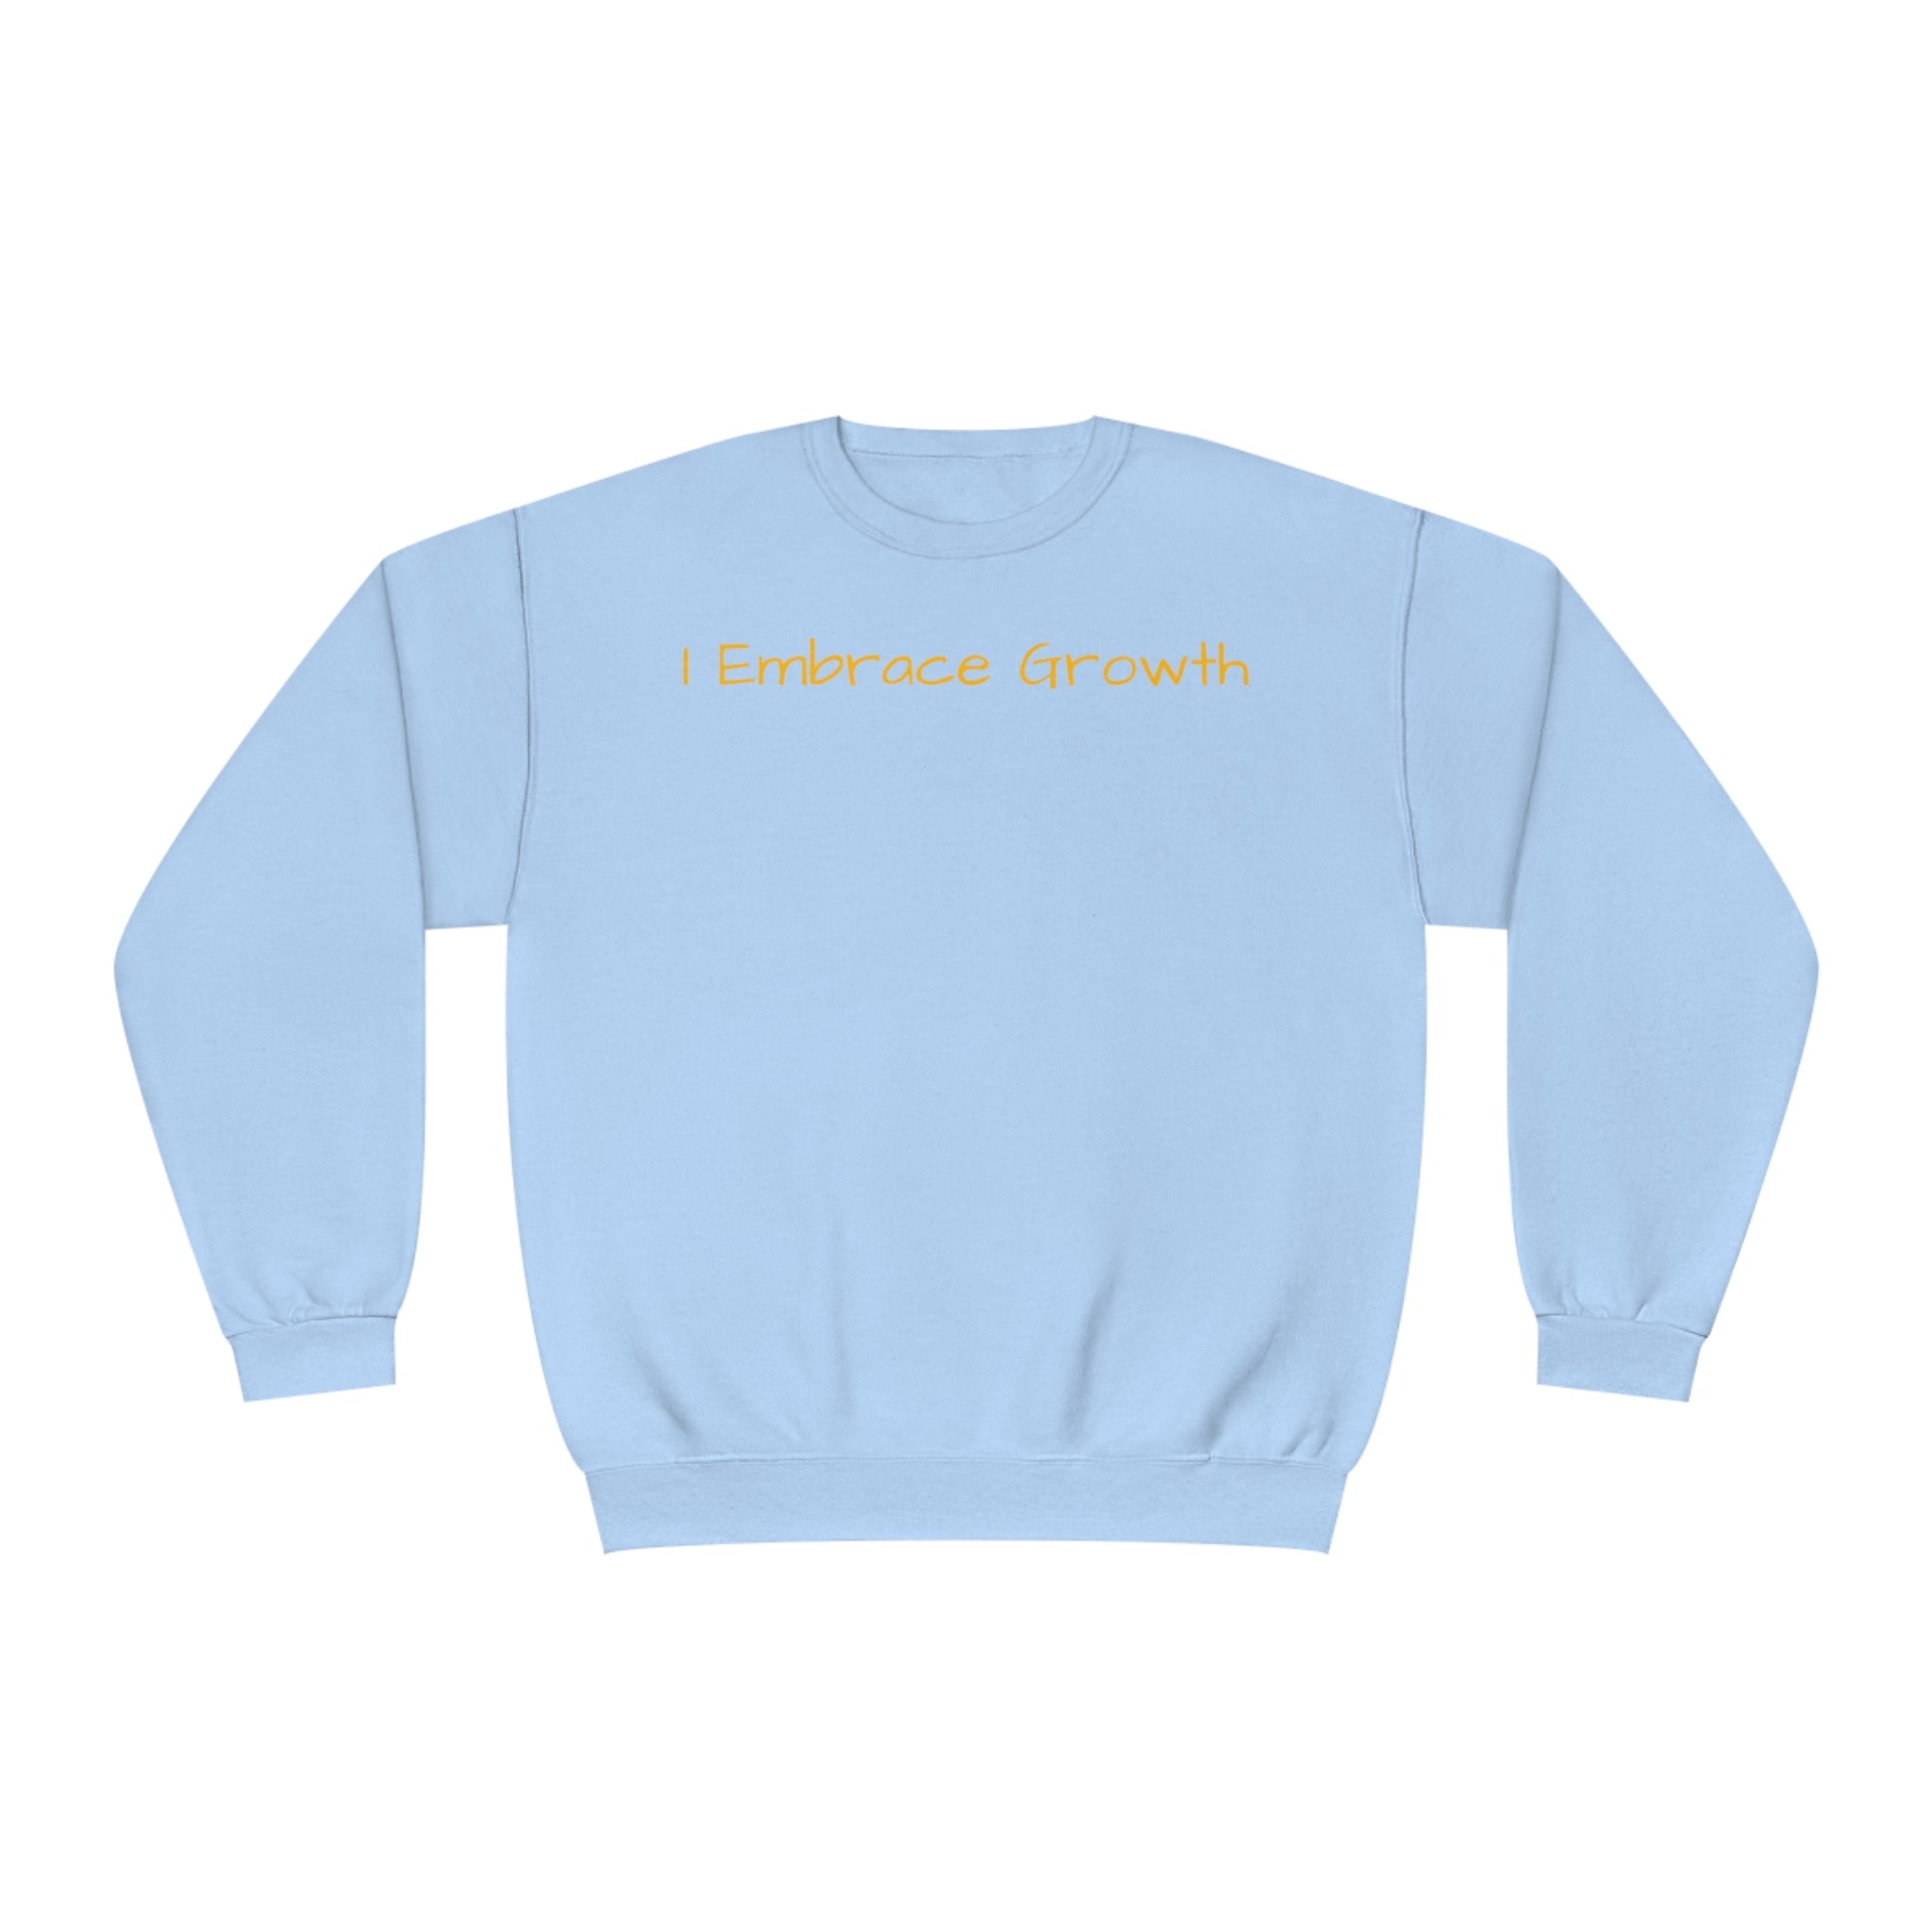 I Embrace Growth Fleece Sweatshirt: Comfort & Style Sandstone Comfy Sweater Cozy Sweatshirt Crewneck Sweatshirt Fleece Pullover Graphic Sweatshirt Men's Sweatshirt Streatwear Sweatshirt Warm Outerwear Women's Sweatshirt Sweatshirt 15109560383622974146_2048 Printify